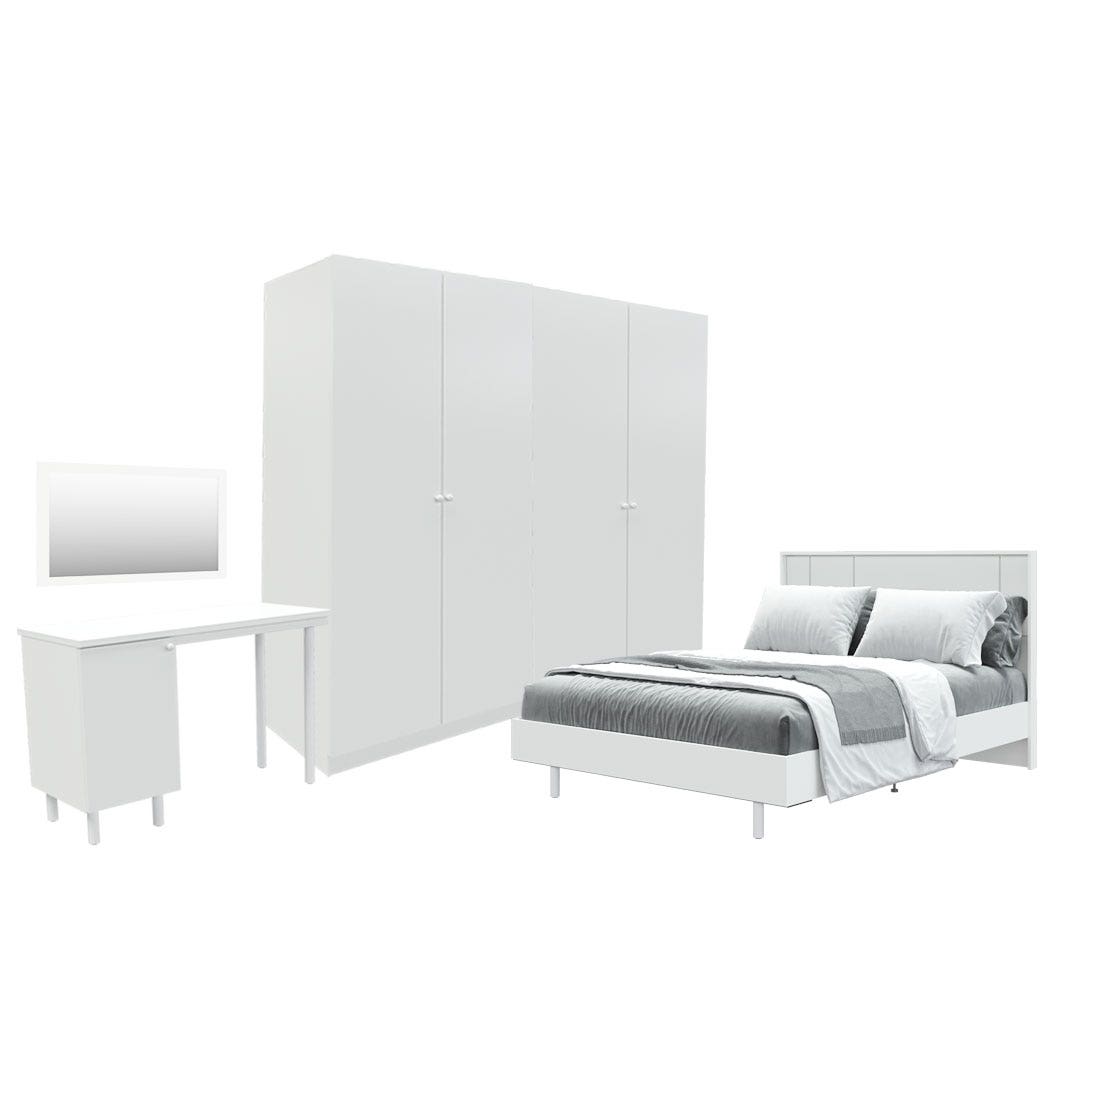 ชุดห้องนอน ขนาด 5 ฟุต รุ่น Pearliz  ขาเหล็ก และ ตู้ Blox ขนาด 200 ซม. พร้อมโต๊ะทำงาน สีขาว มิดกรอส01